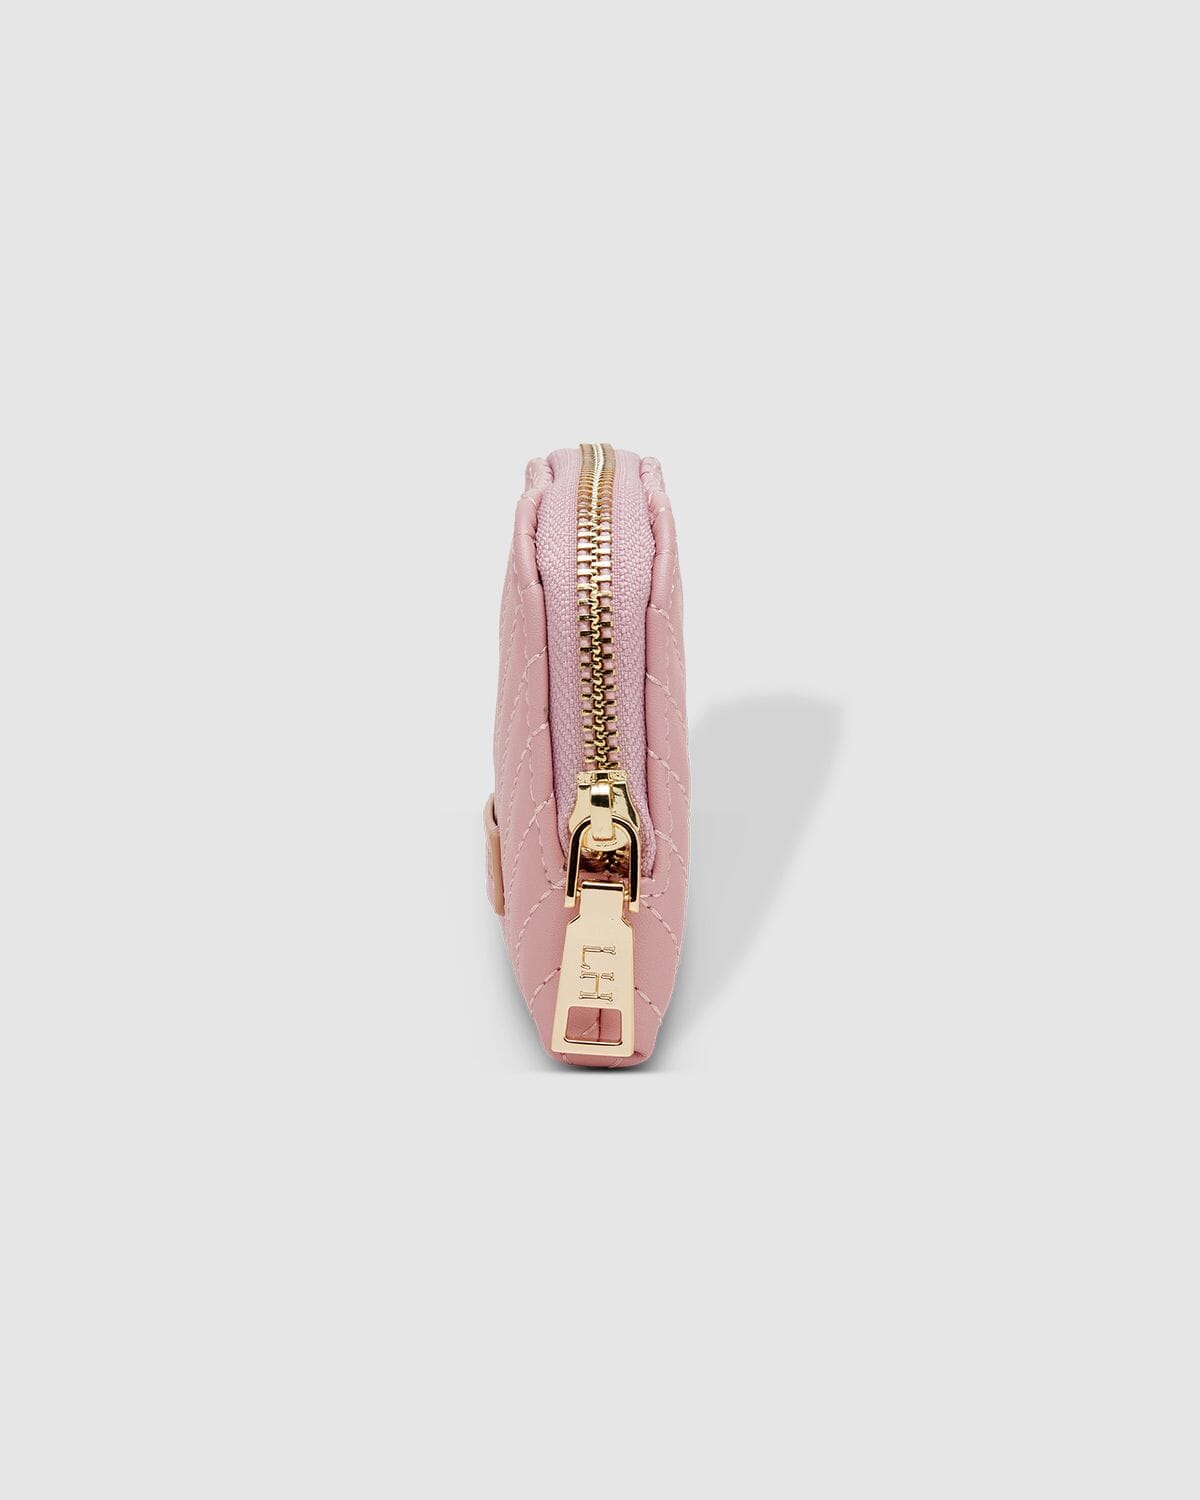 Large light pink Kate Spade purse | Kate spade purse pink, Kate spade purse,  Light pink